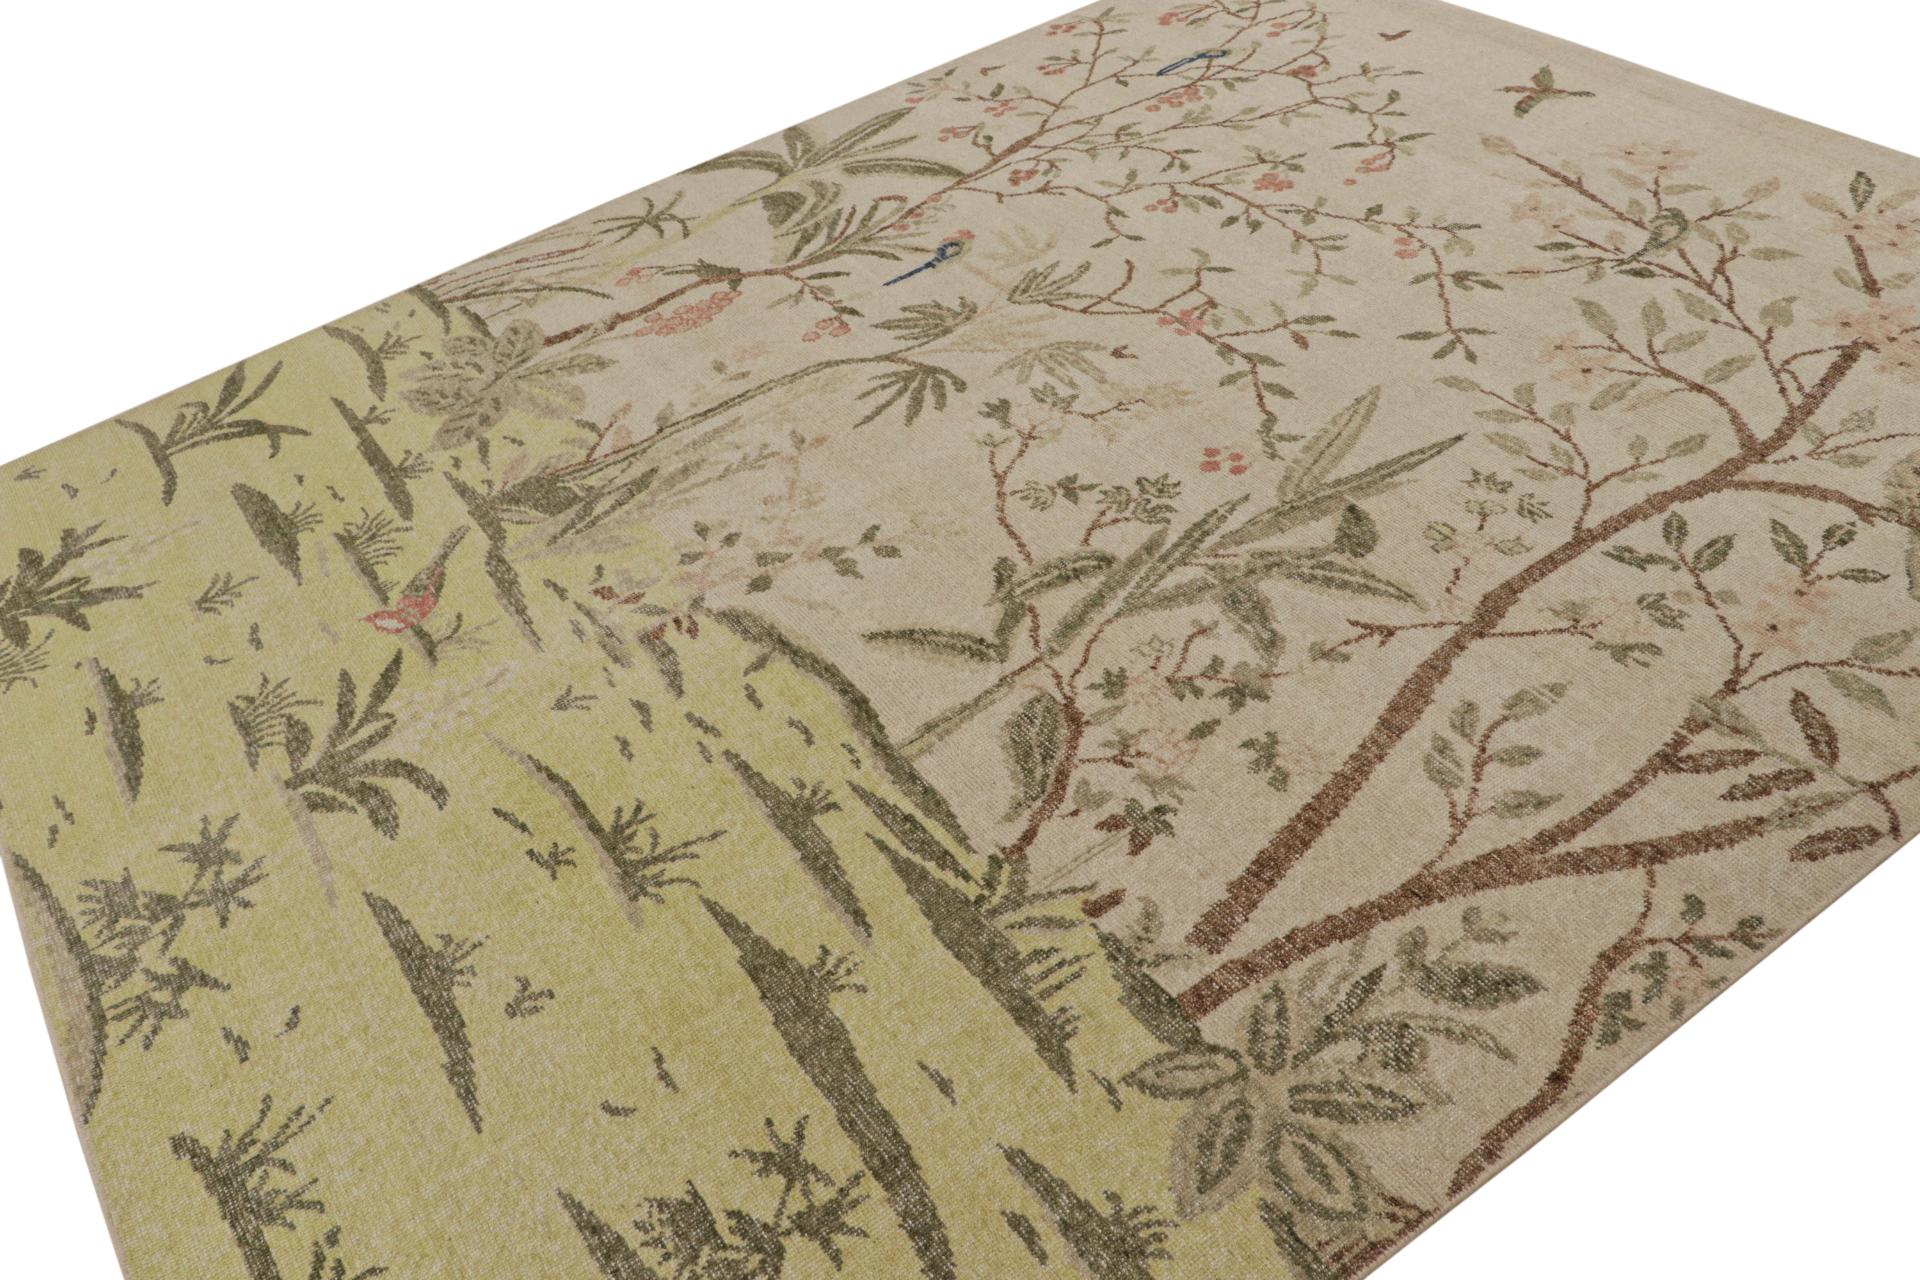 Dieser moderne, aus Indien stammende 8x10 große Teppich ist aus Wolle handgeknüpft und zeigt Bilder von Grünpflanzen und Vögeln in Grün-, Rosa- und Taupe-Tönen. 

Über das Design: 

Dieser moderne Teppich von Rug & Kilim ist eine Neuheit unter den